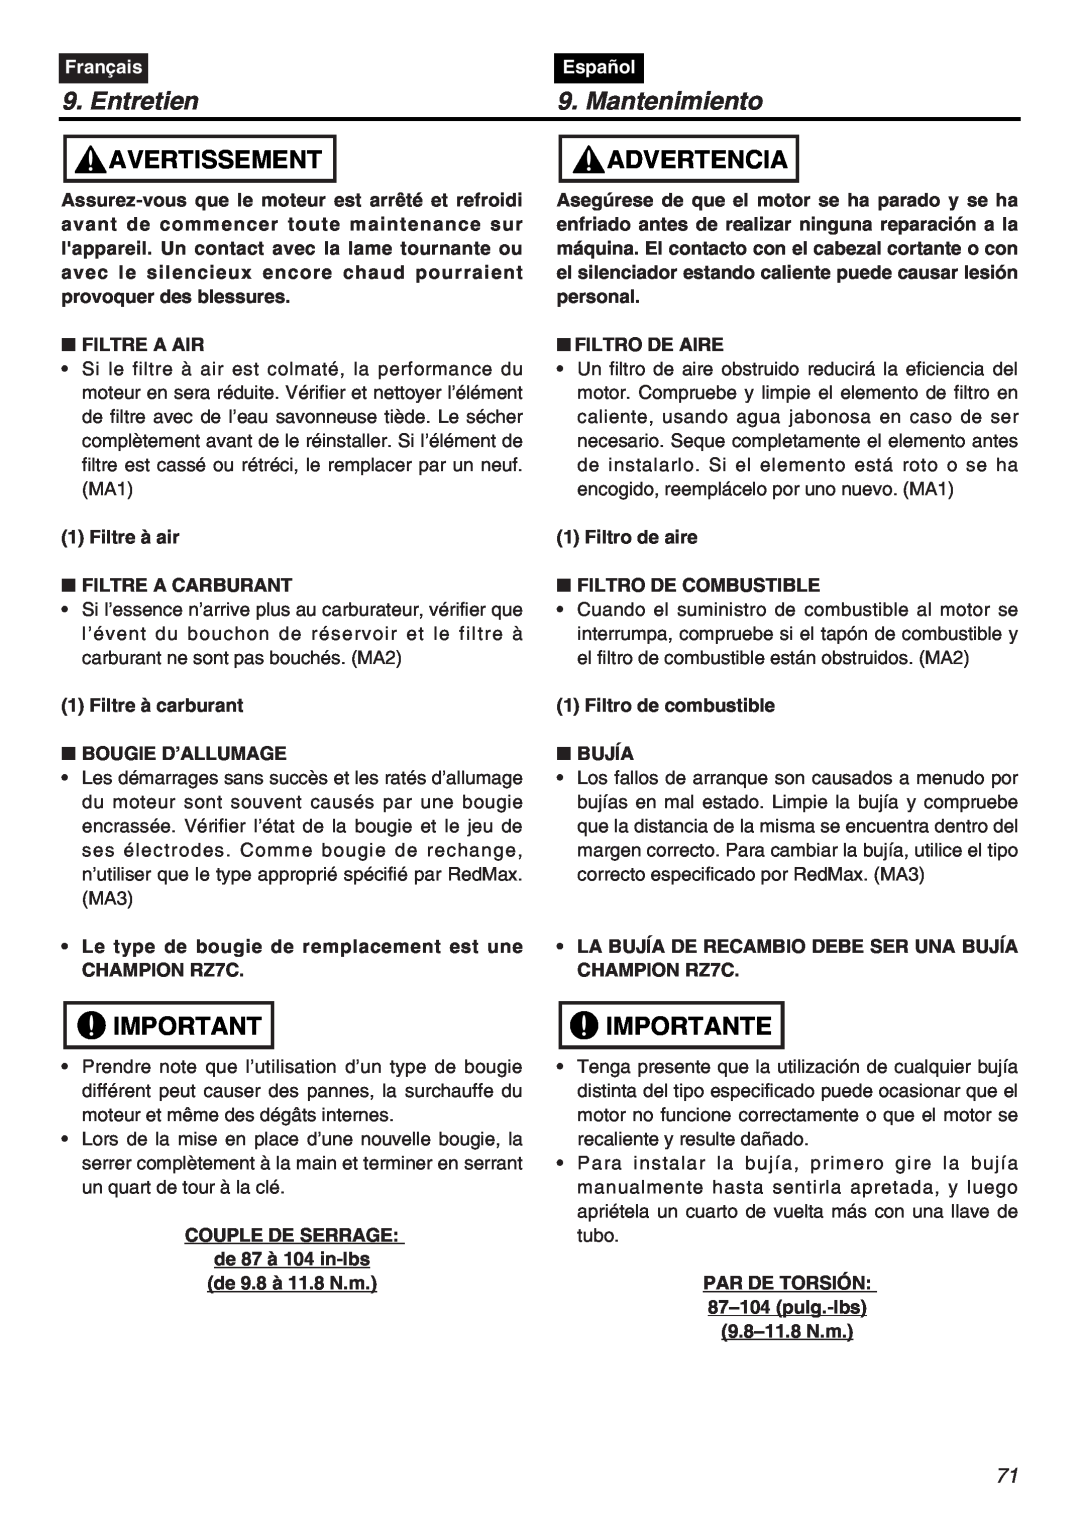 RedMax EXZ2401S-PH-CA manual Mantenimiento, Entretien, Avertissement, Advertencia, Importante, Français, Español 